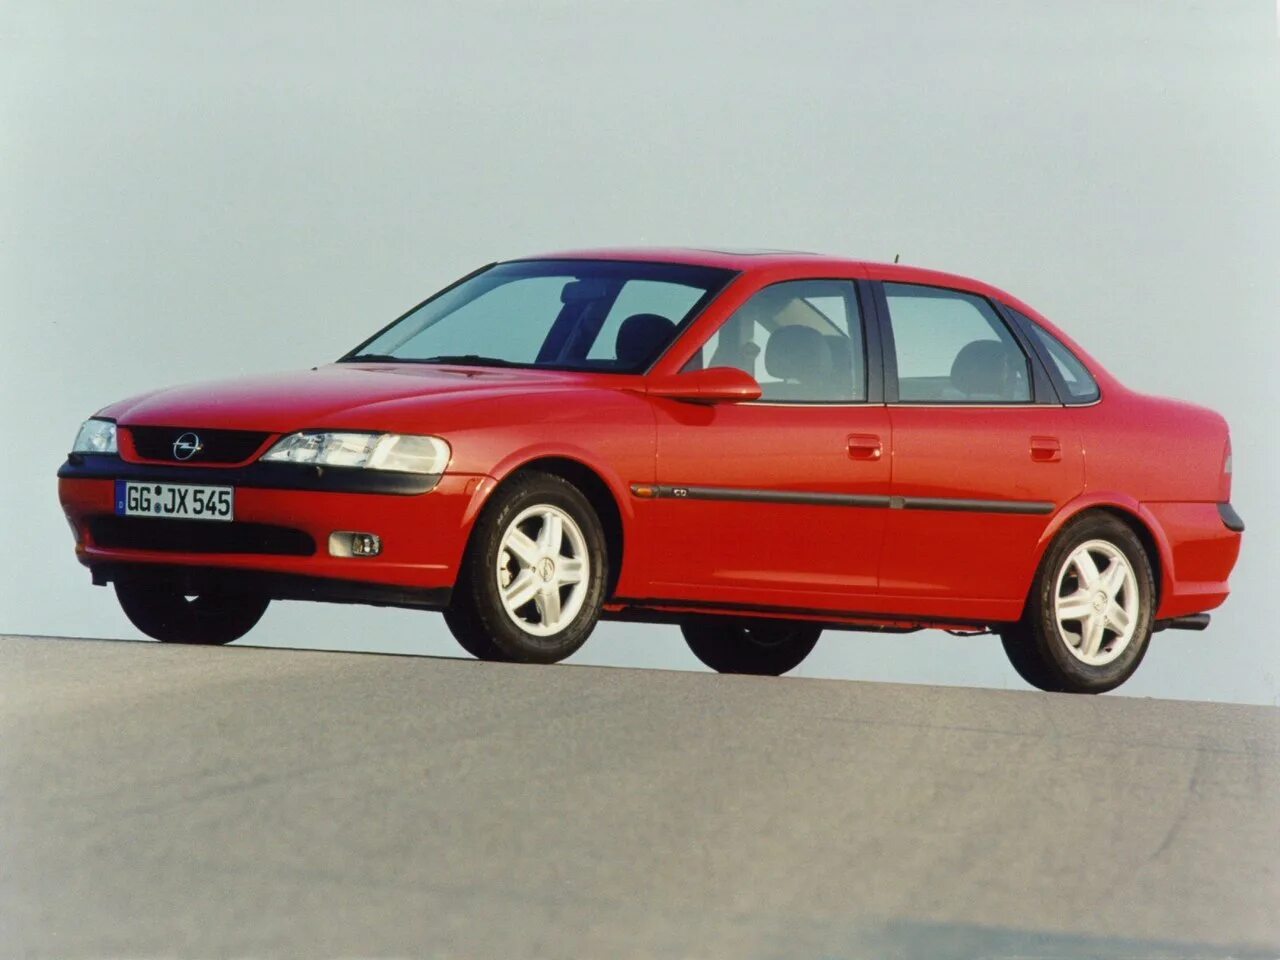 Автомобиль вектра б. Opel Vectra b. Opel Vectra 1999 седан. Opel Vectra b 1995 - 2000 седан. Опель Вектра 1995 седан.